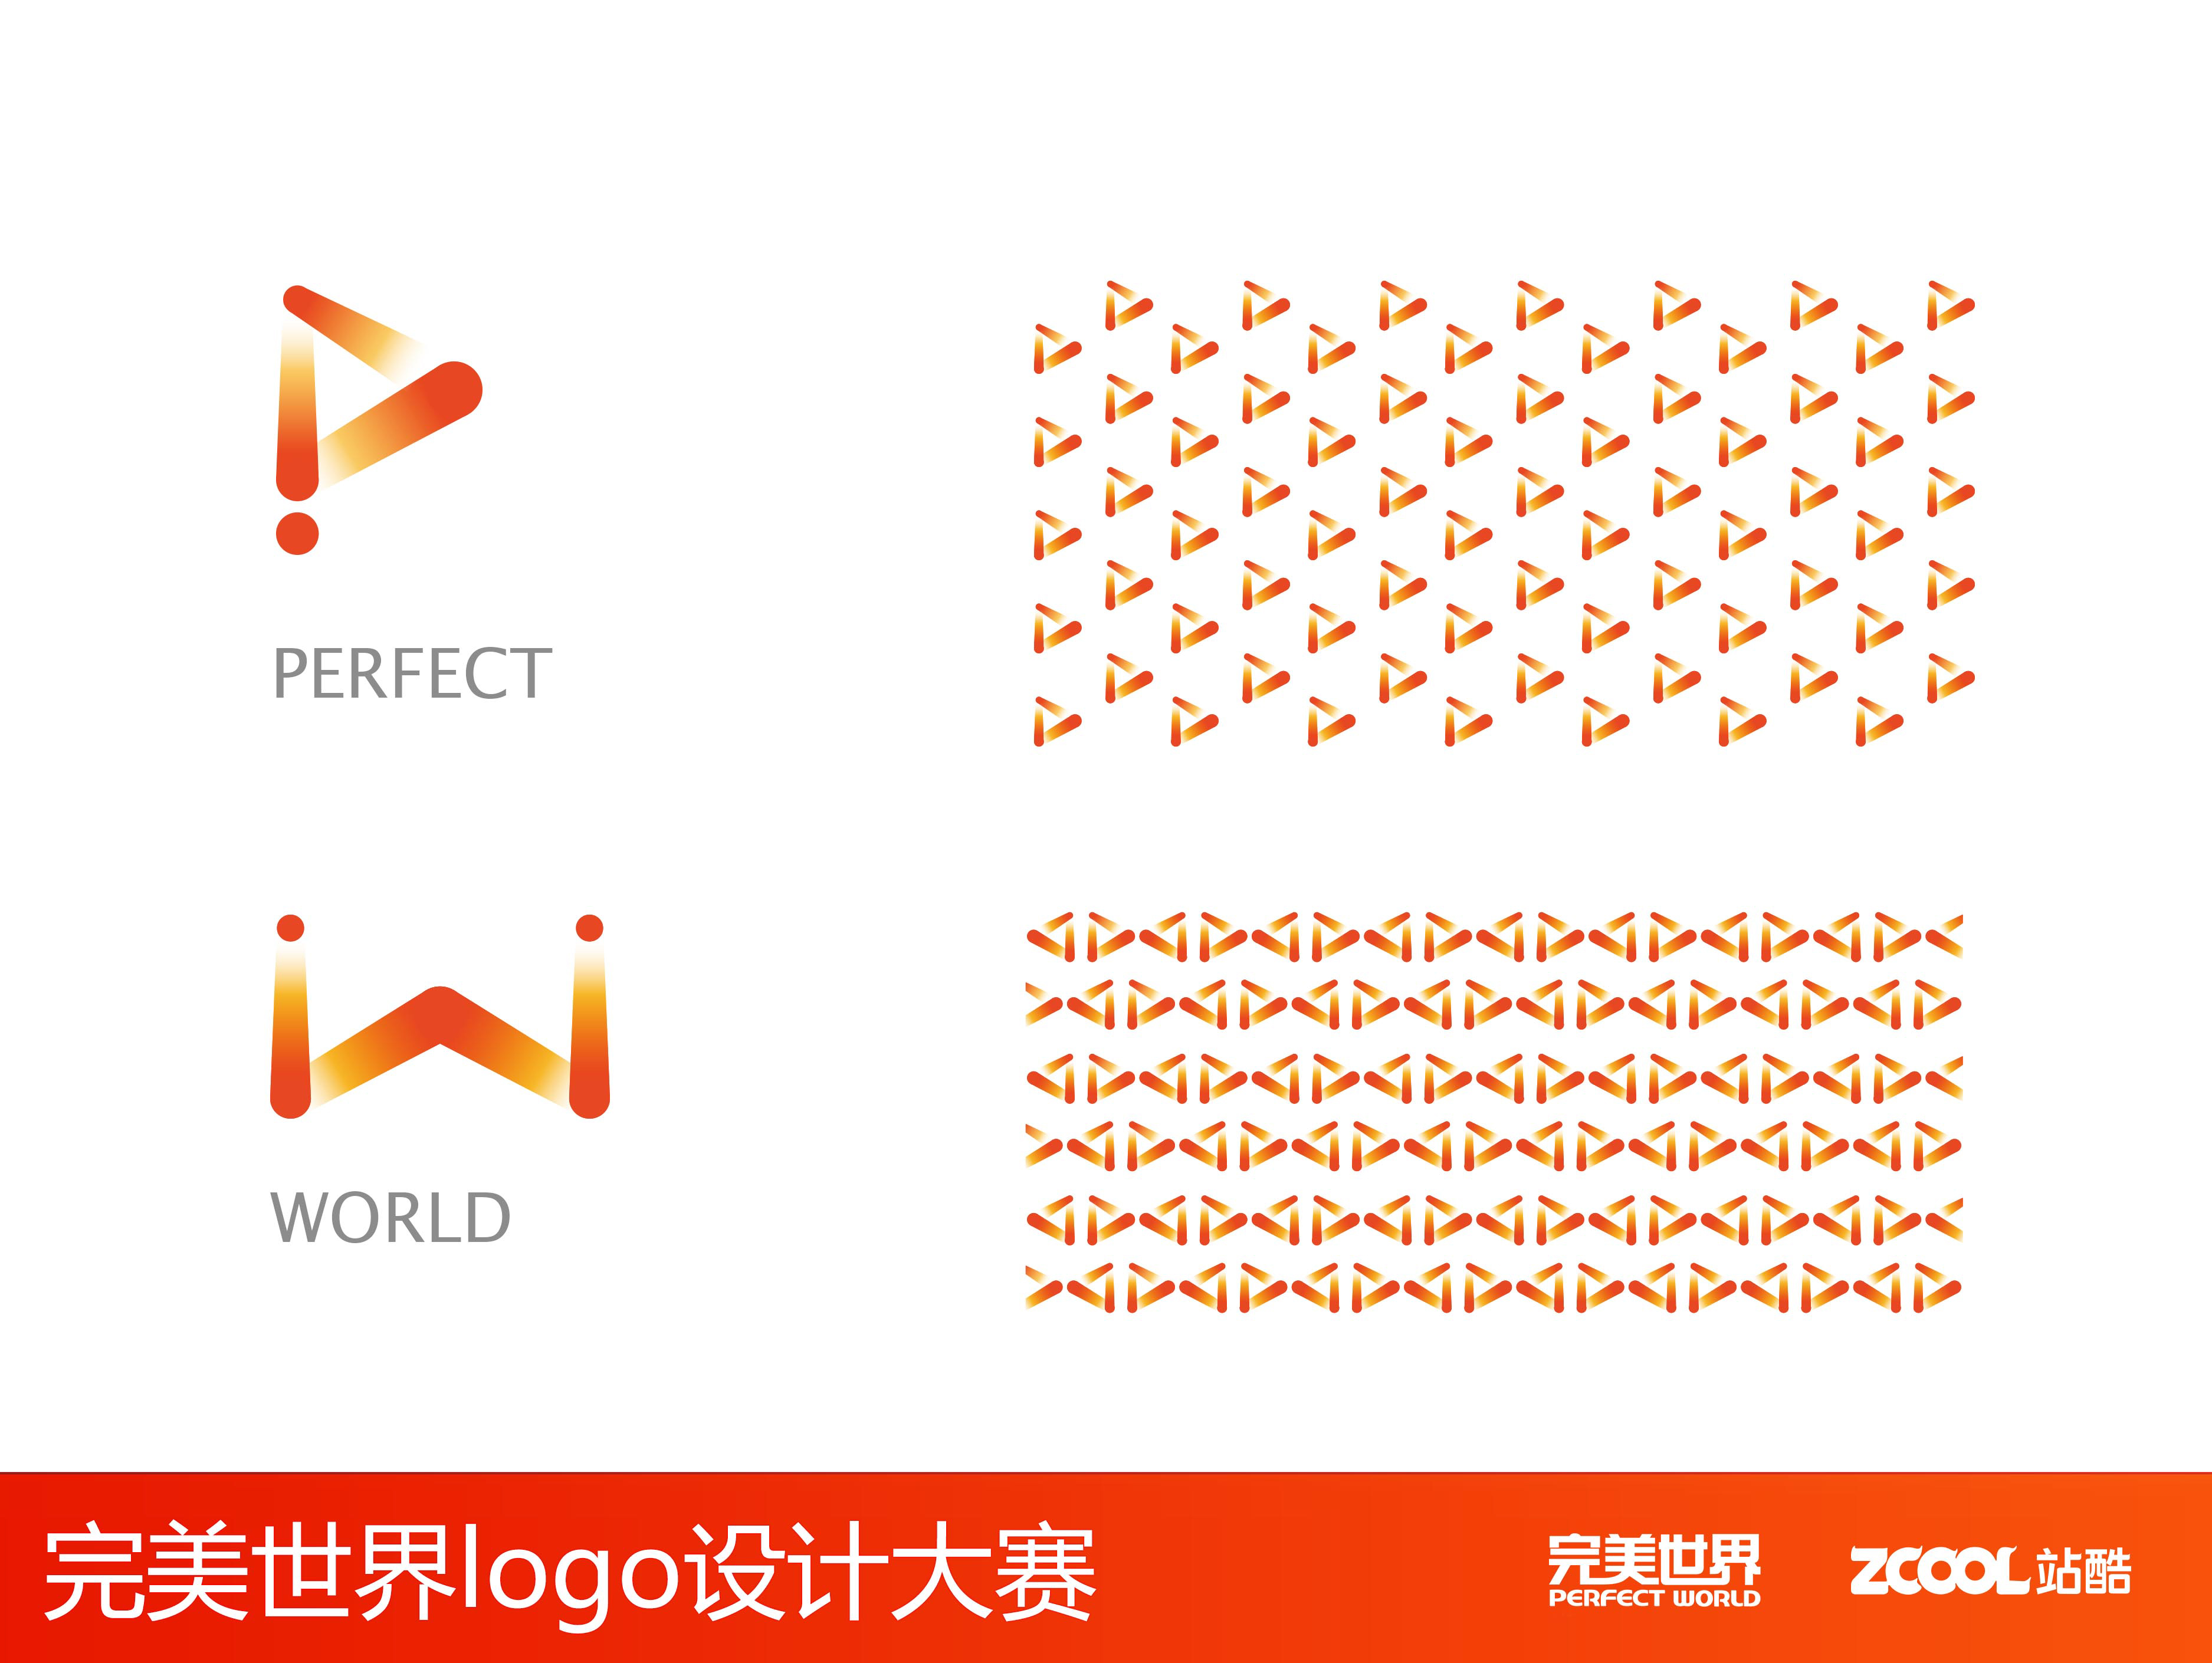 完美世界logo设计